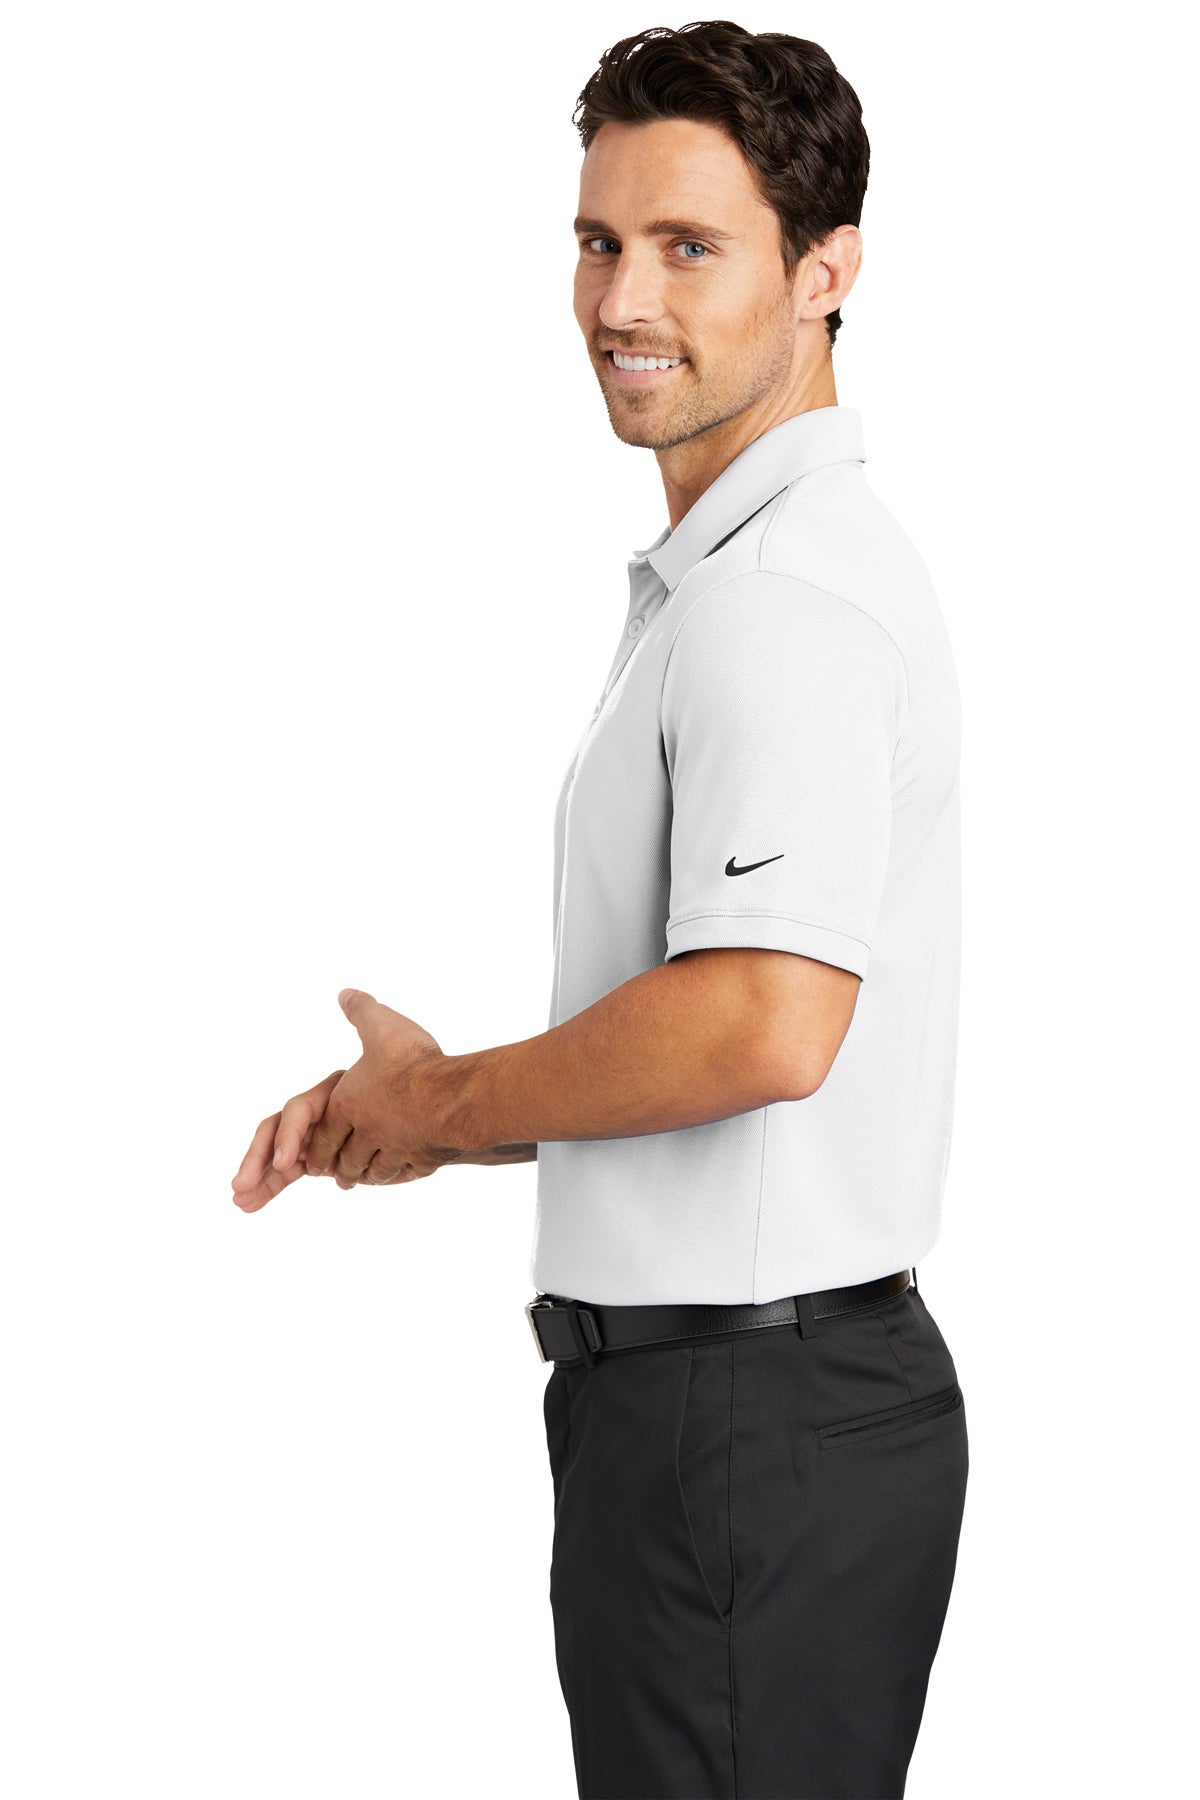 Nike Golf Dri-FIT Solid Icon Pique Custom Polo Shirts - Mens